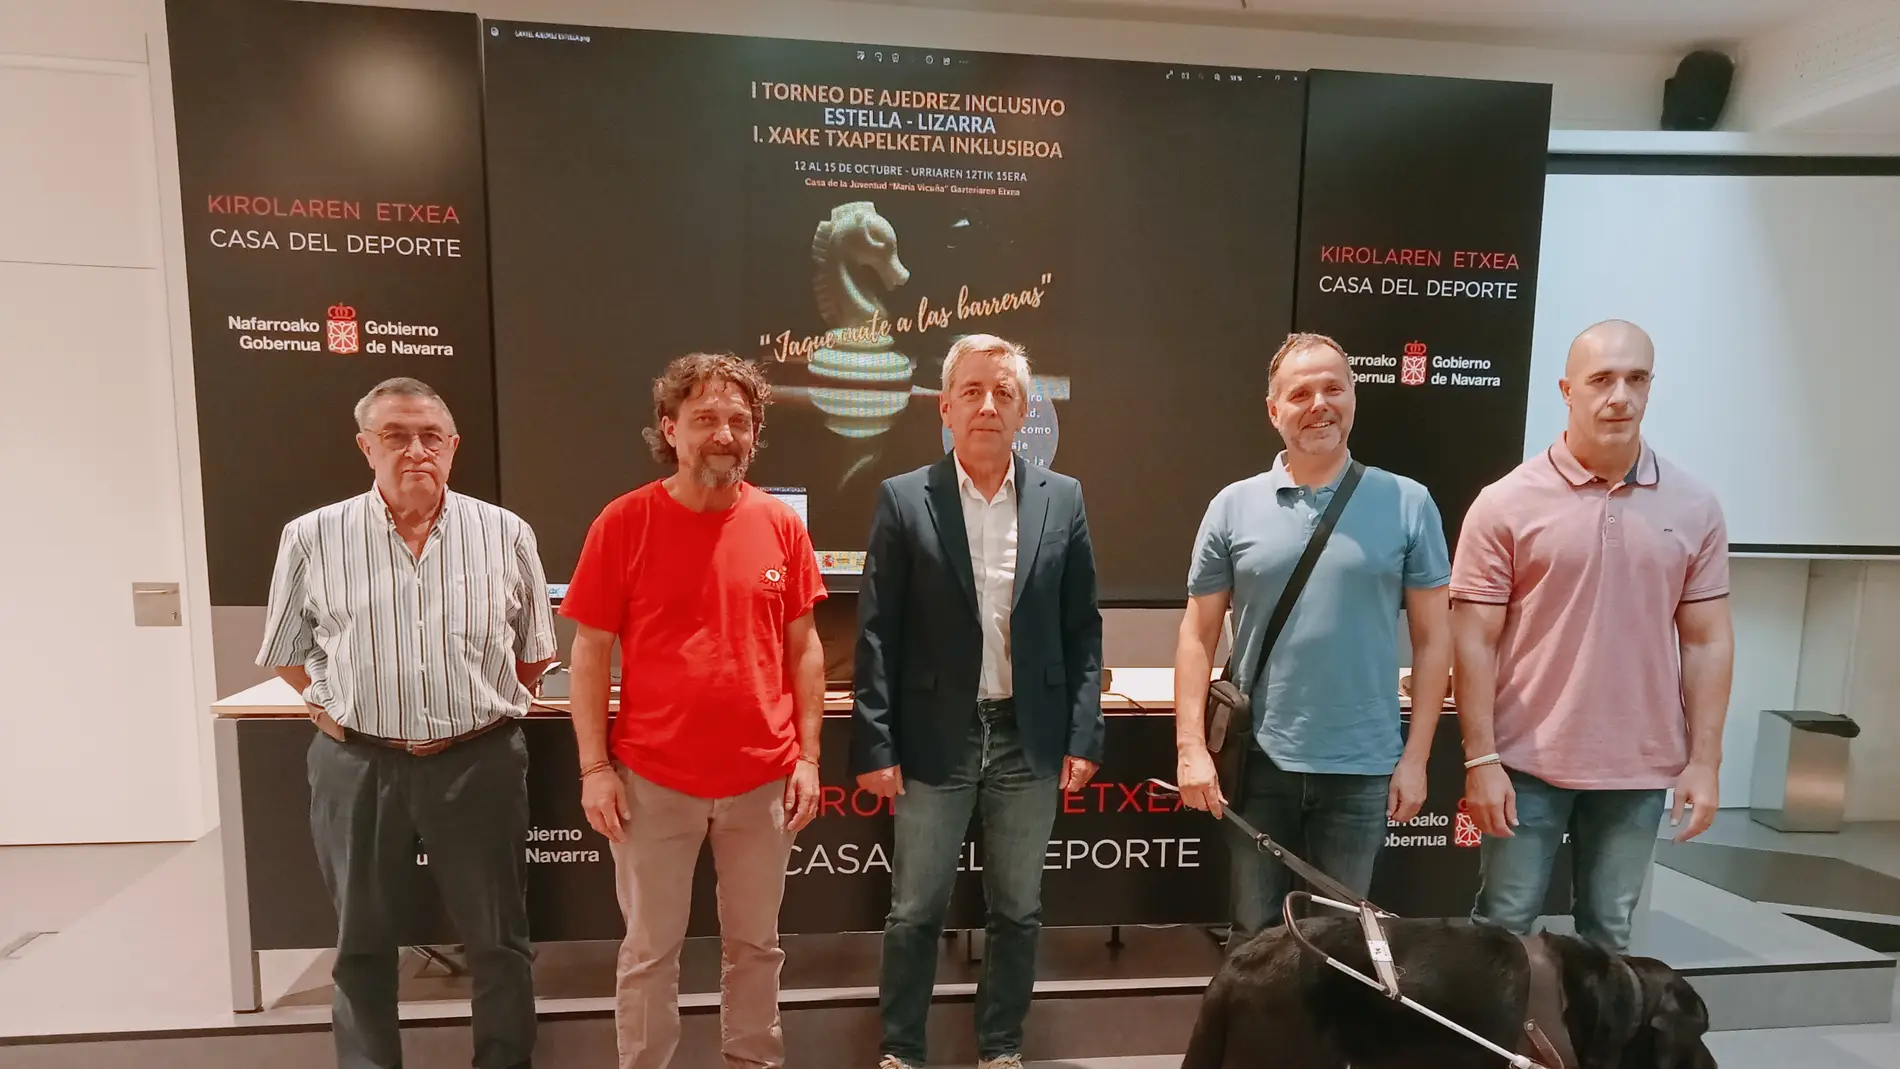 Club Deportivo para Ciegos en el I Torneo de Ajedrez Inclusivo Estella - Lizarra